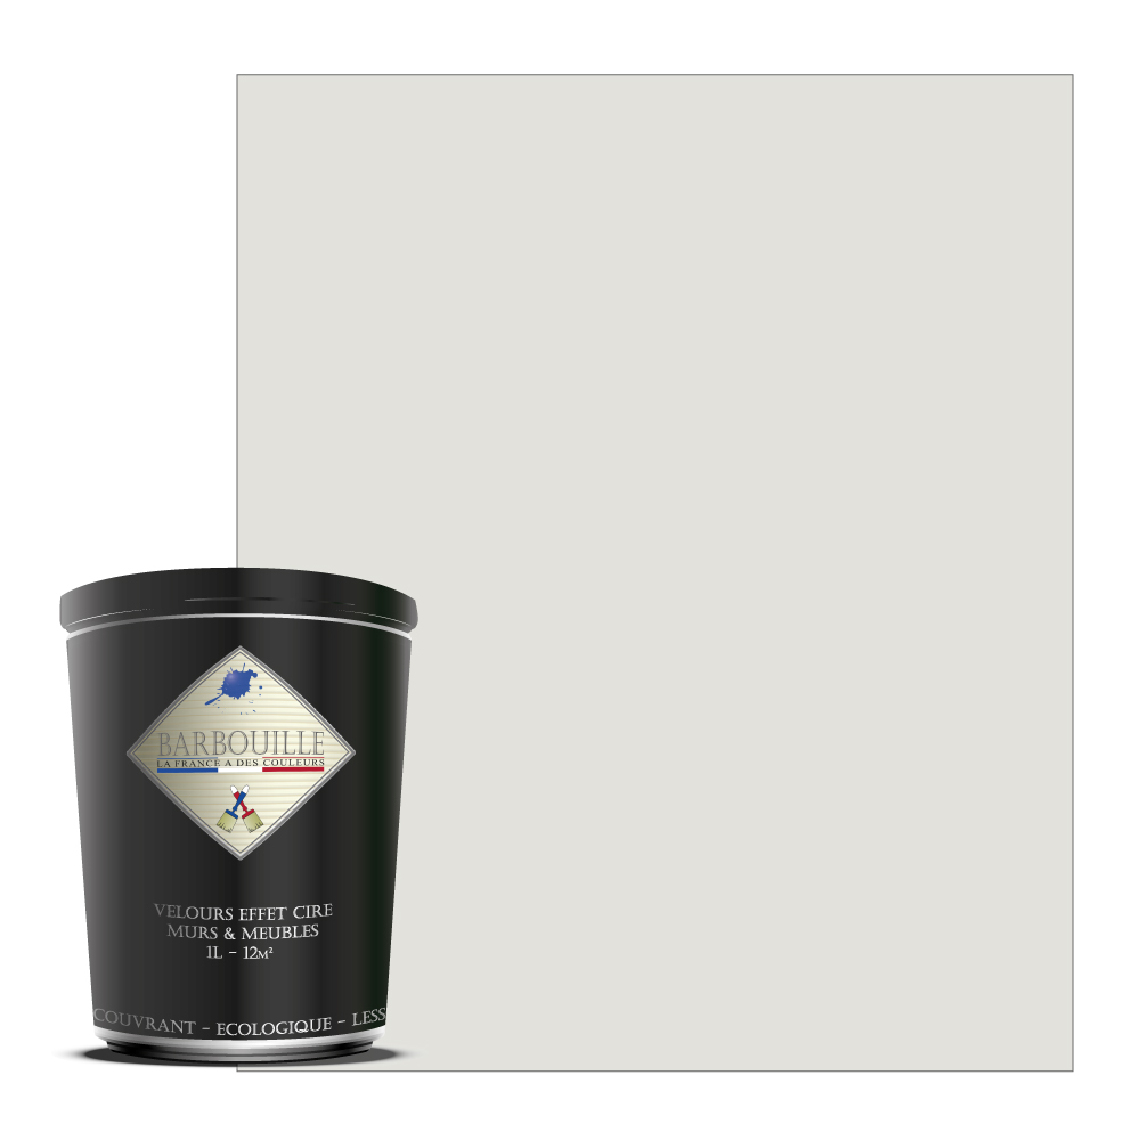 Barbouille - Peinture lessivable acrylique velouté – murs et plafonds - Peinture intérieure